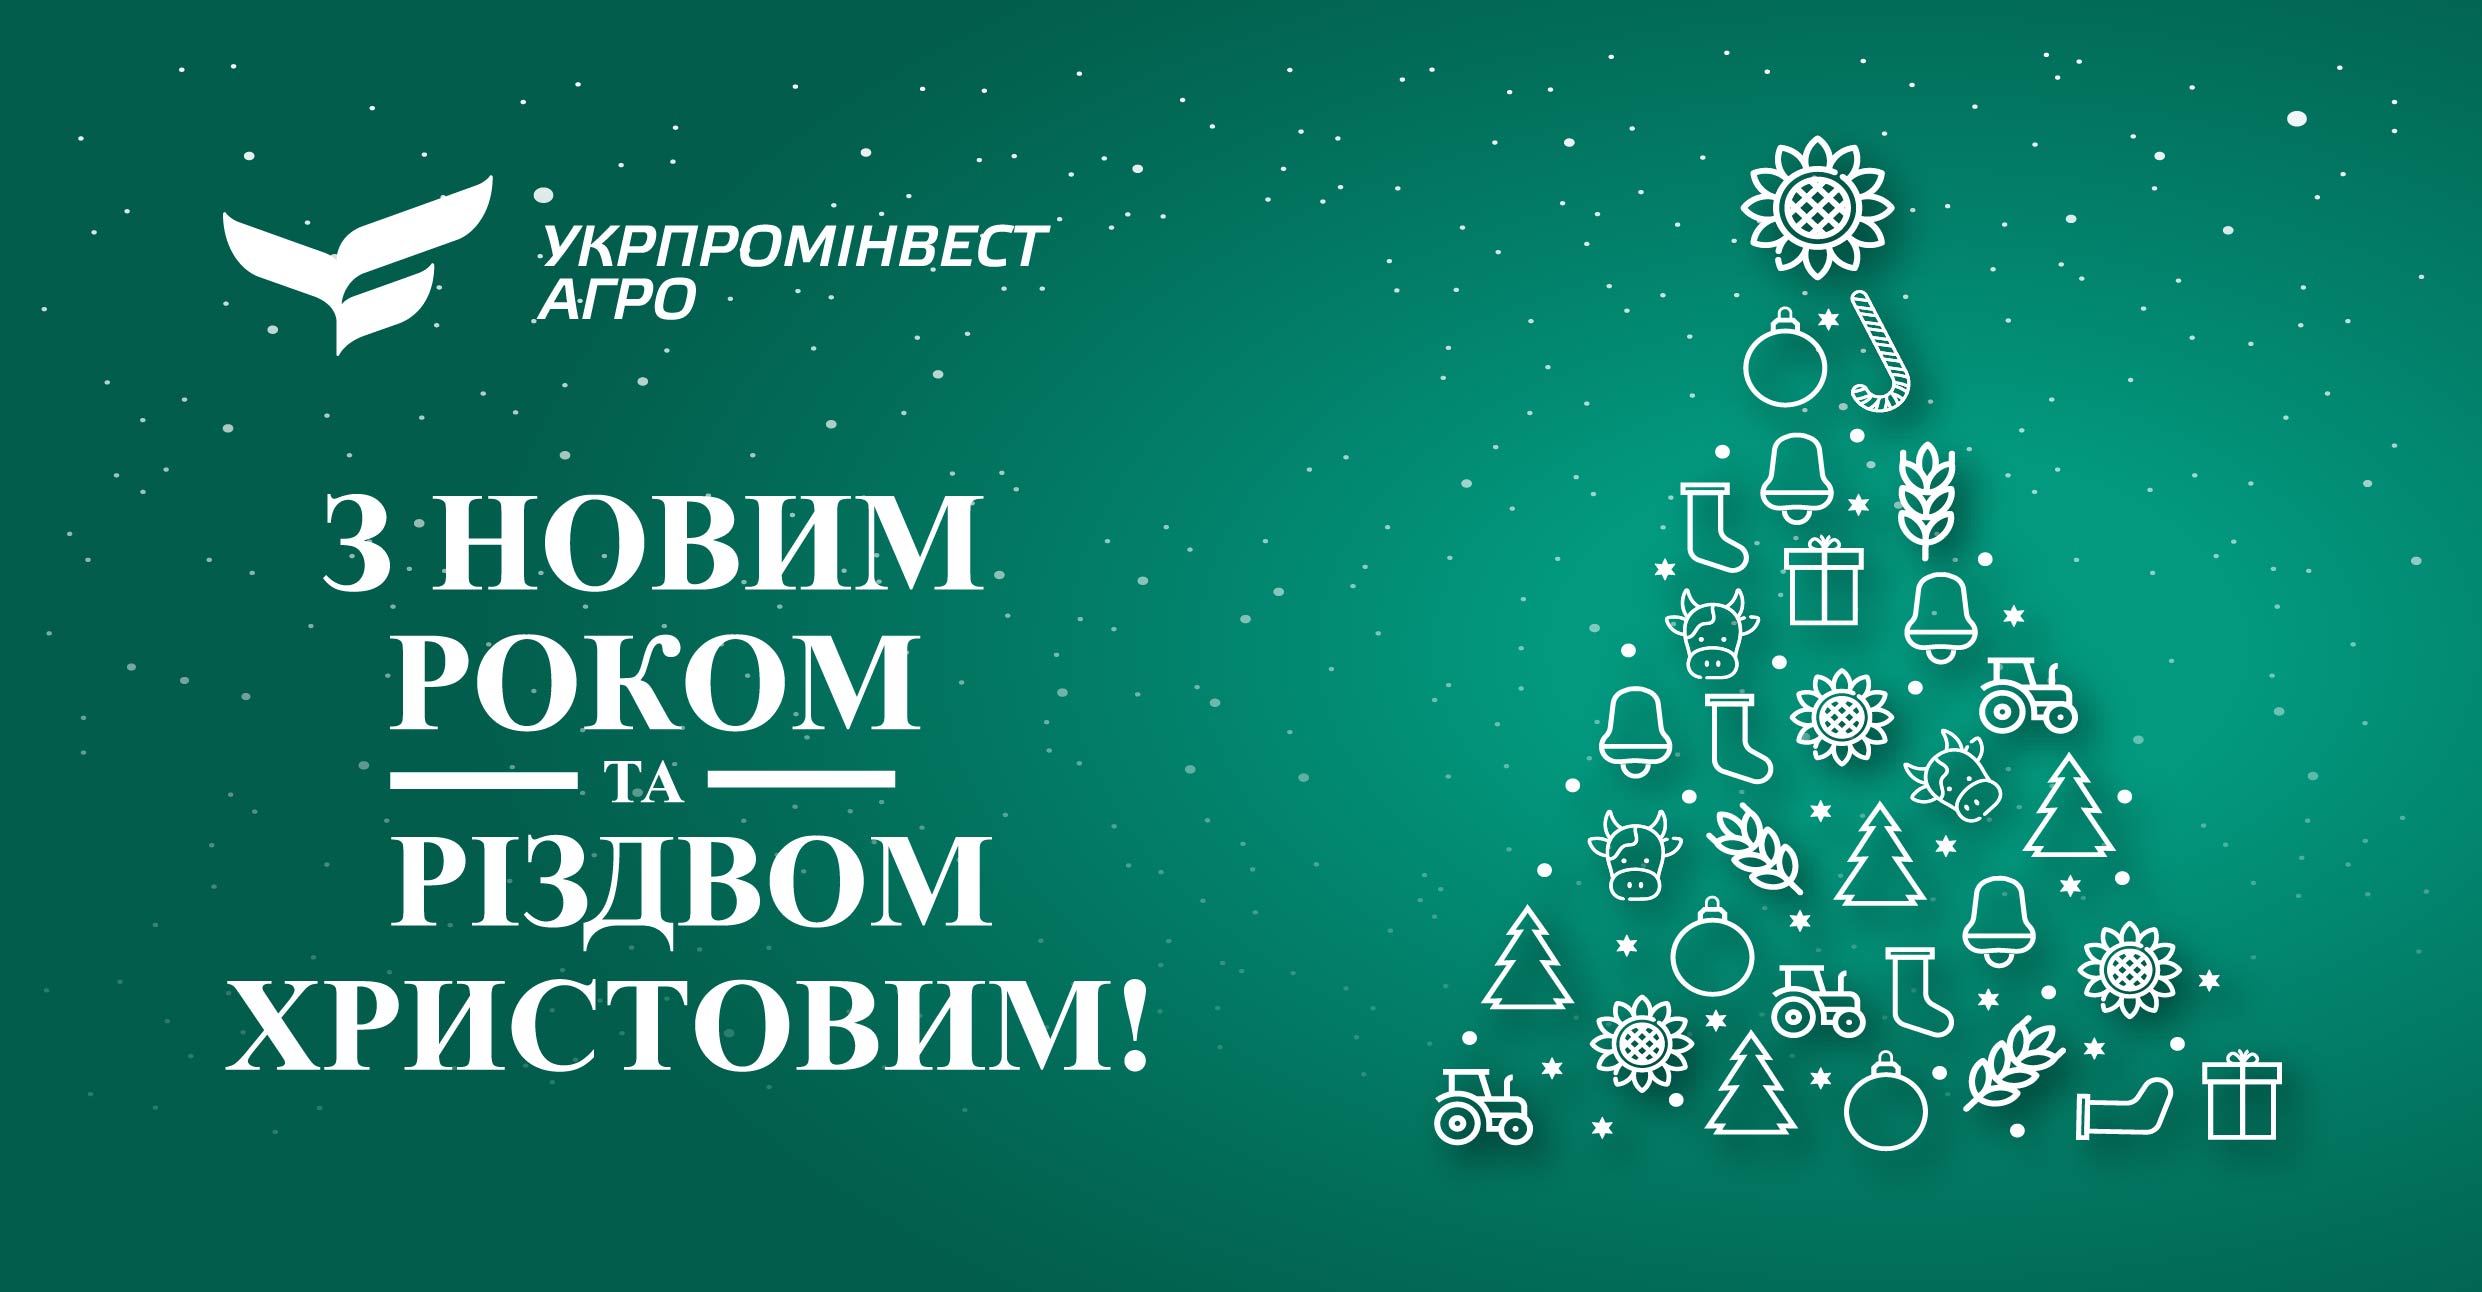 УКРПРОМИНВЕСТ-АГРО поздравляет всех с Новым Годом и Рождеством Христовым! 